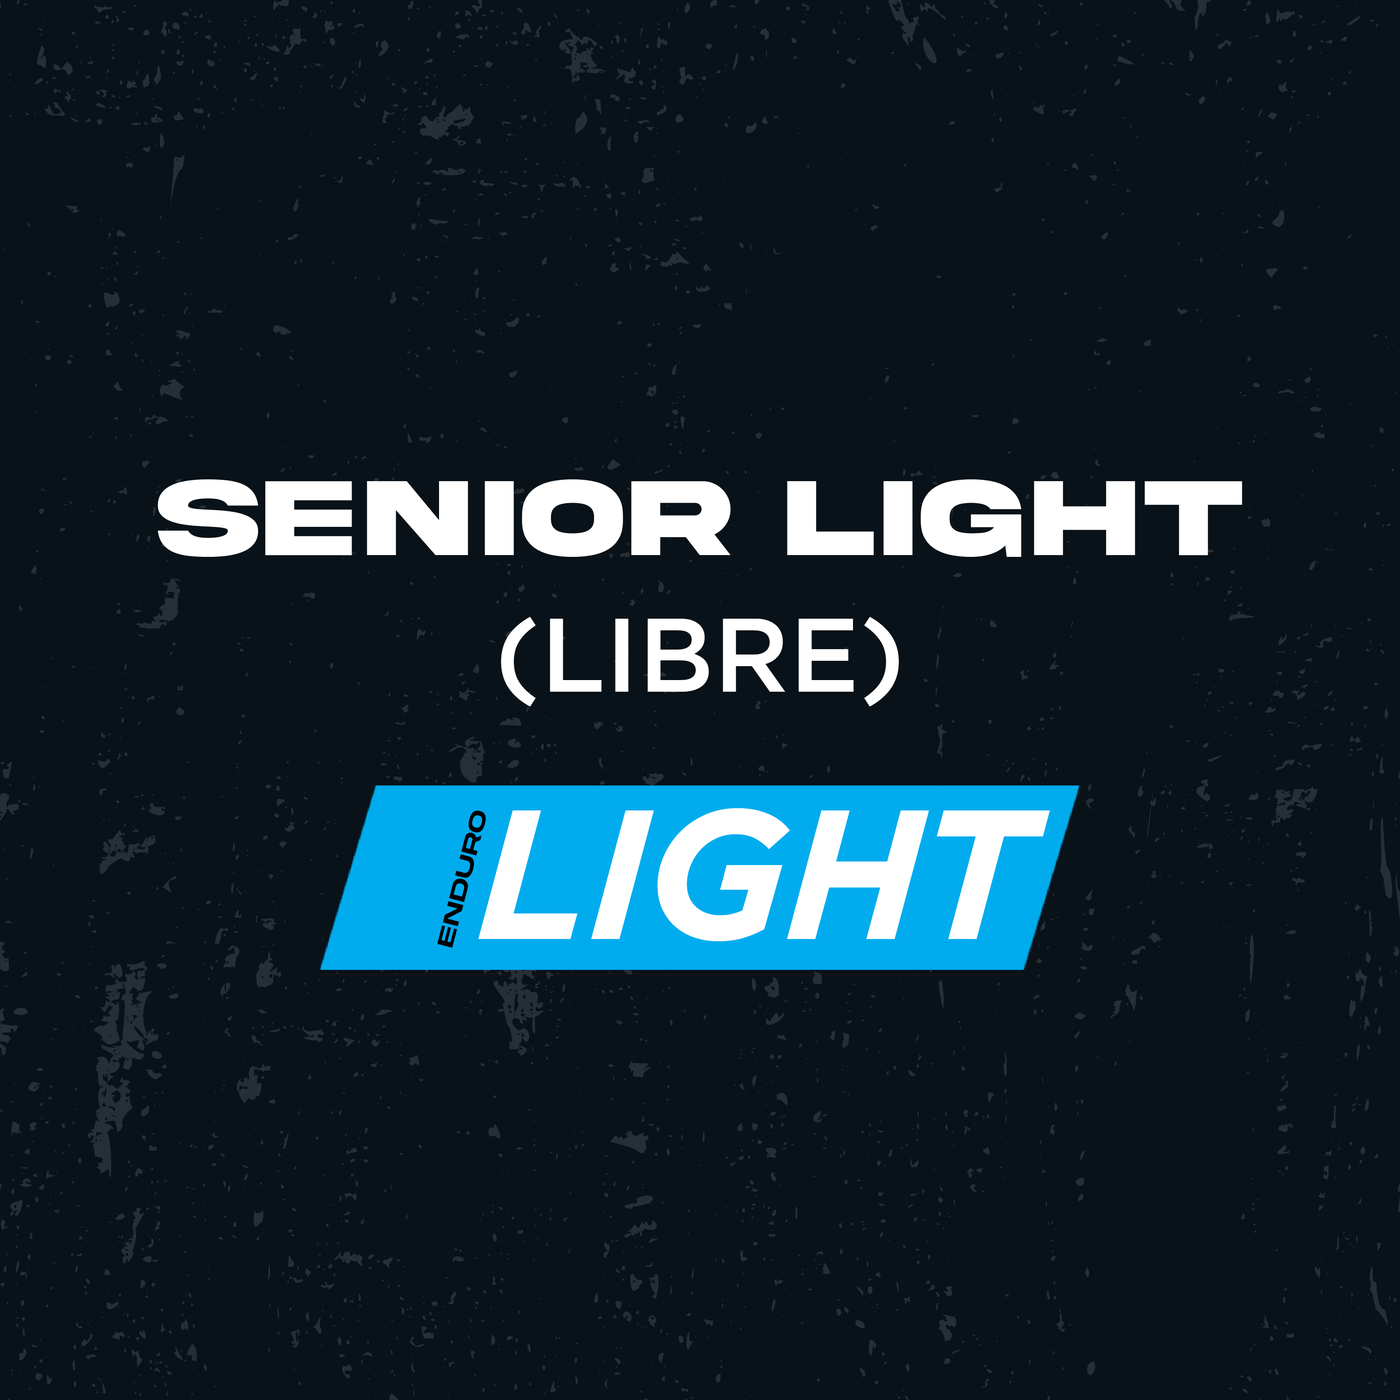 SENIOR - LIGHT (Libre)